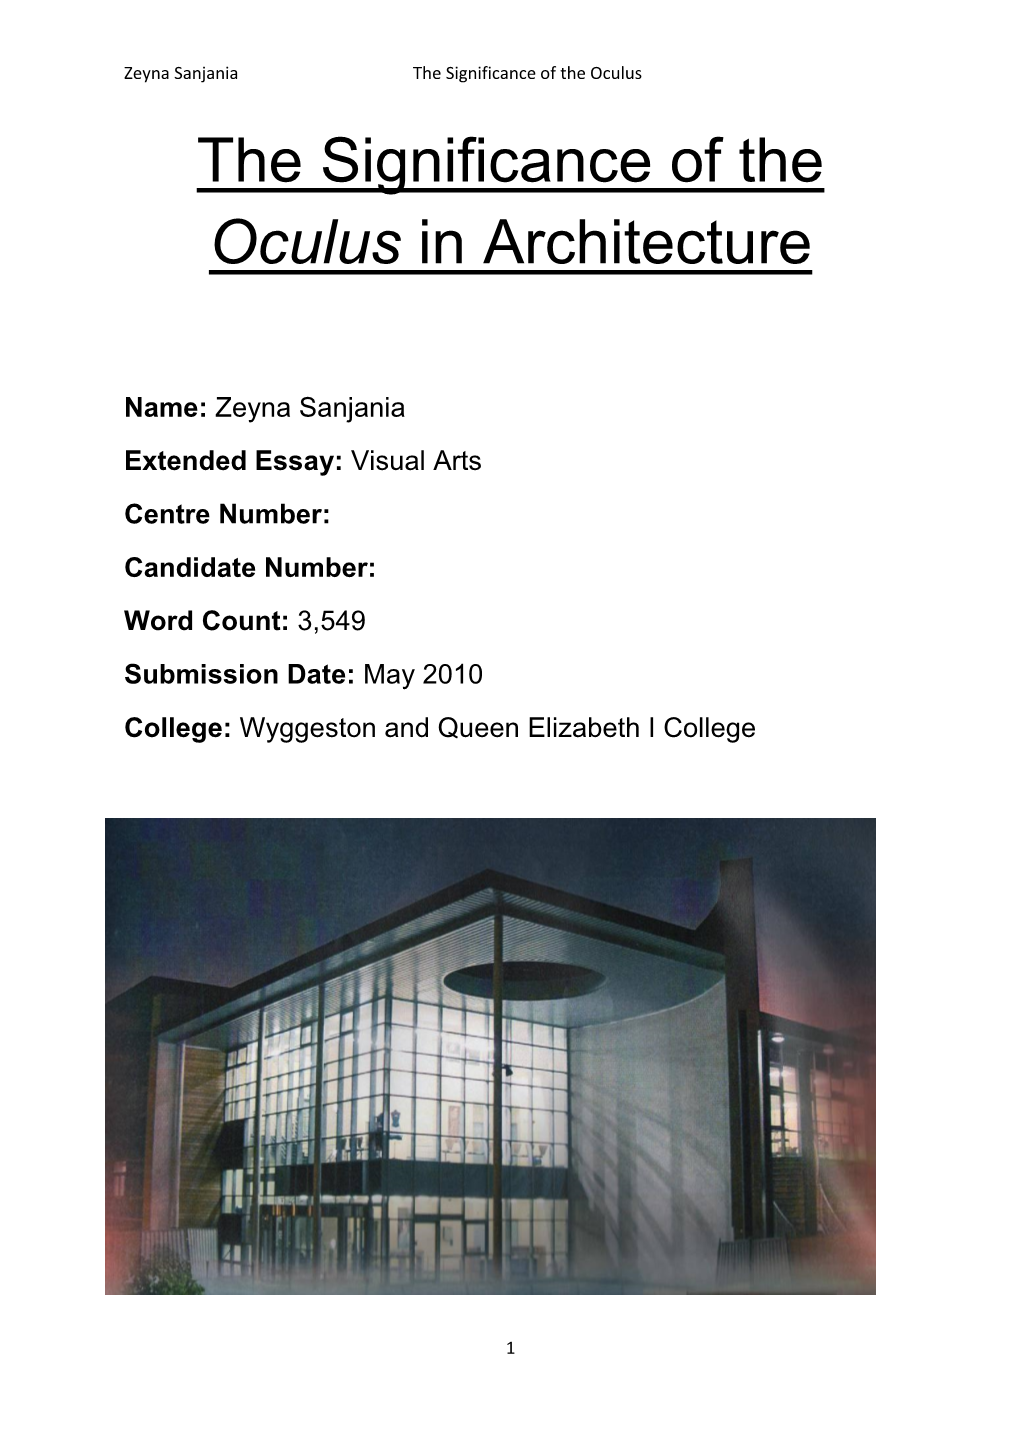 “Oculus” in Architecture